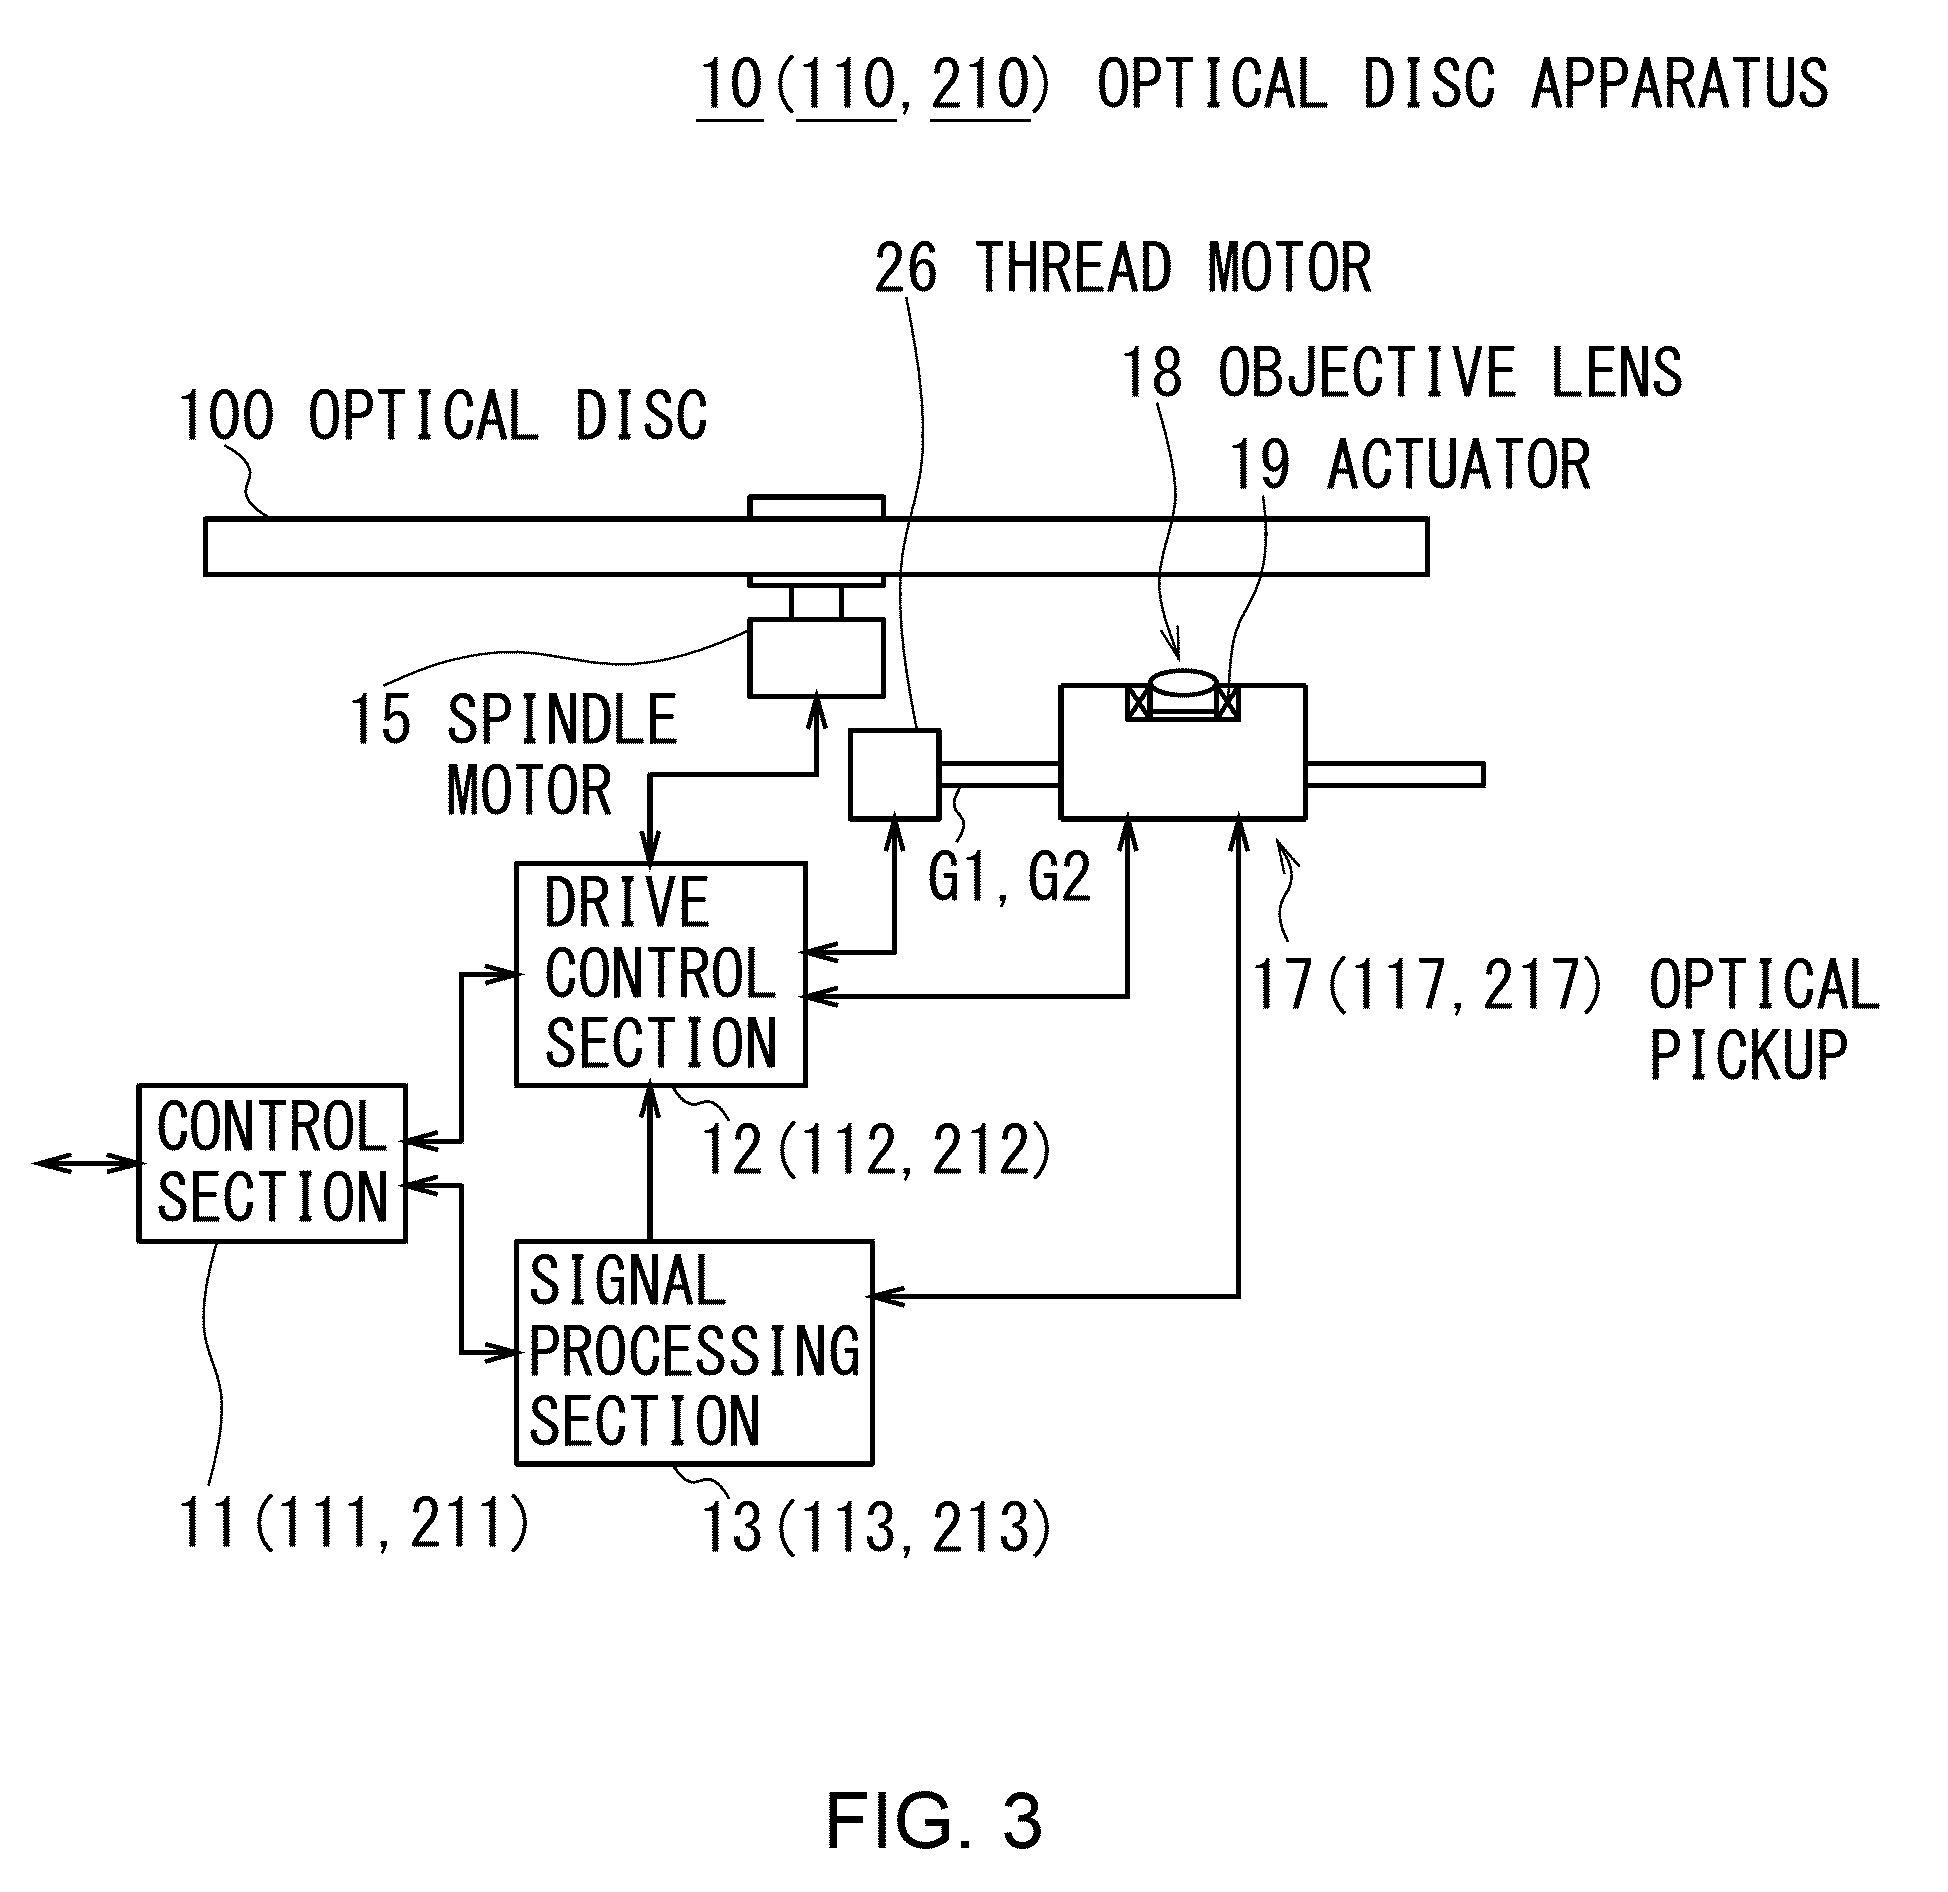 Optical disc apparatus and optical disc replay method